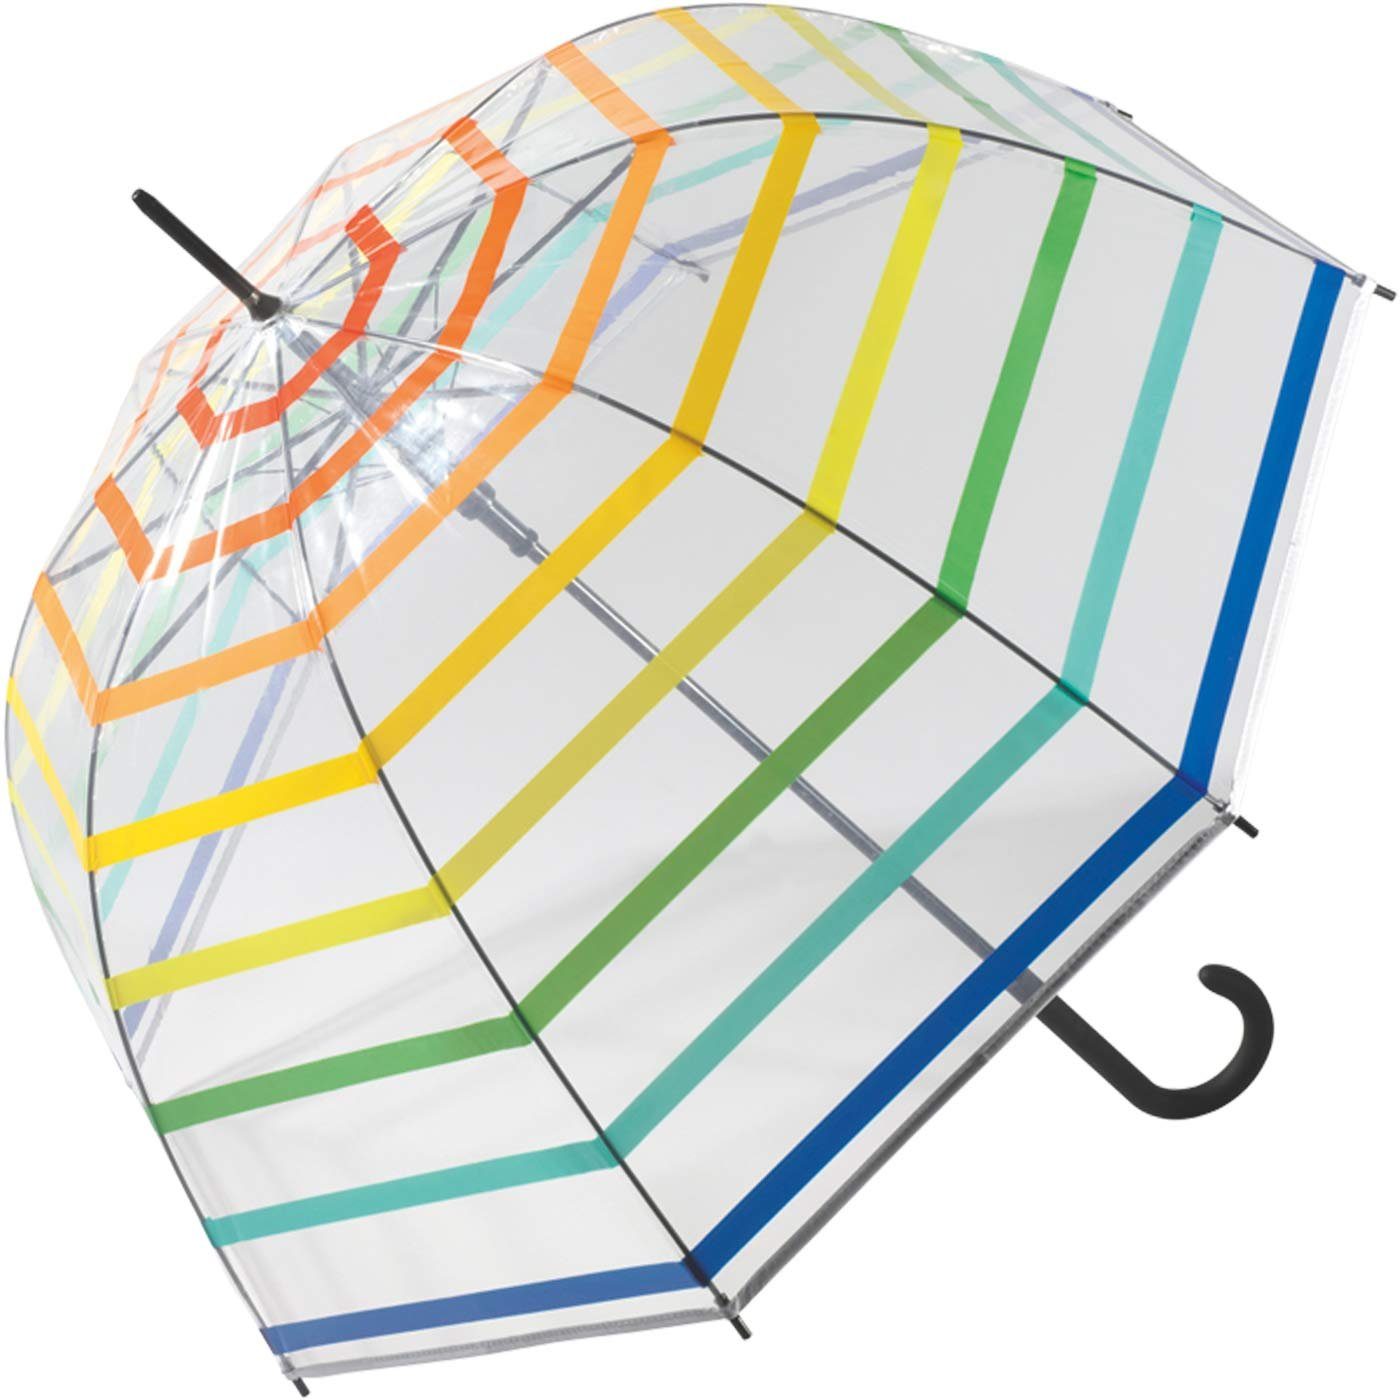 United Colors of Benetton Langregenschirm Glockenschirm mit Automatik  transparent Regenbogen, voller Druchblick mit diesem durchsichtigen  Kuppelschirm